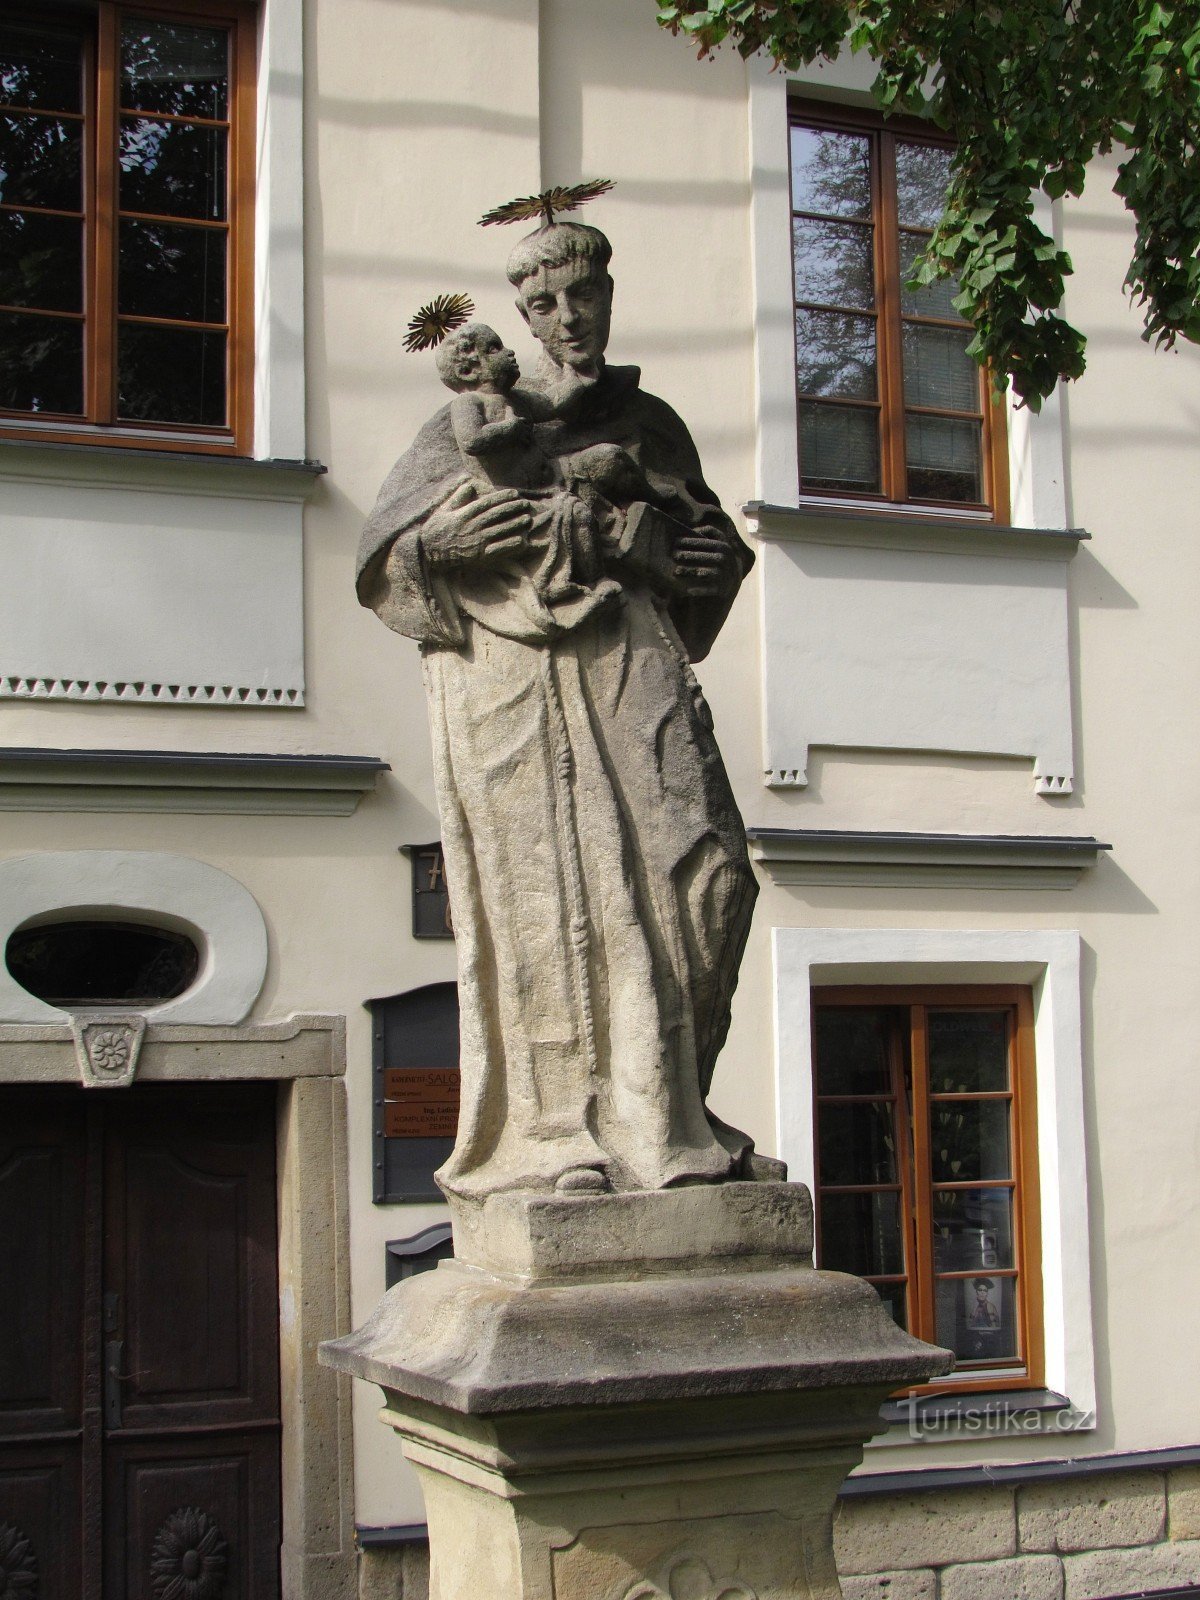 Novojičín tượng của Thánh Anthony và Thánh Ignatius